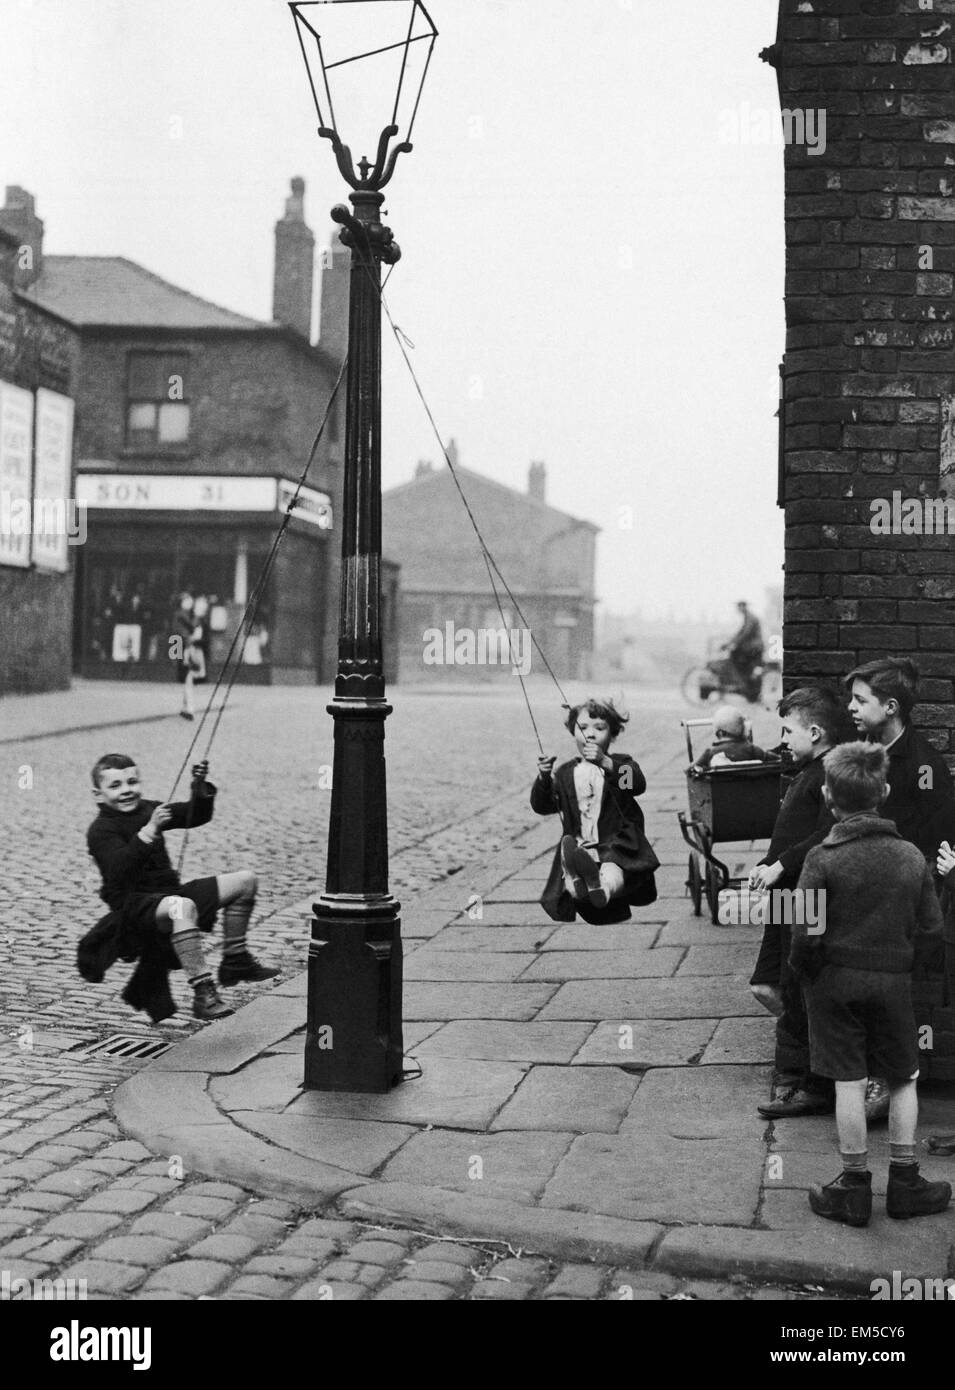 Kinder in einer Manchester Straße finden den eigenen Genuss mit Hilfe von einem Seil und einem Laternenpfahl. Kinder spielen auf der Straße, im März 1943 von einer Straßenlaterne schwingen. Stockfoto